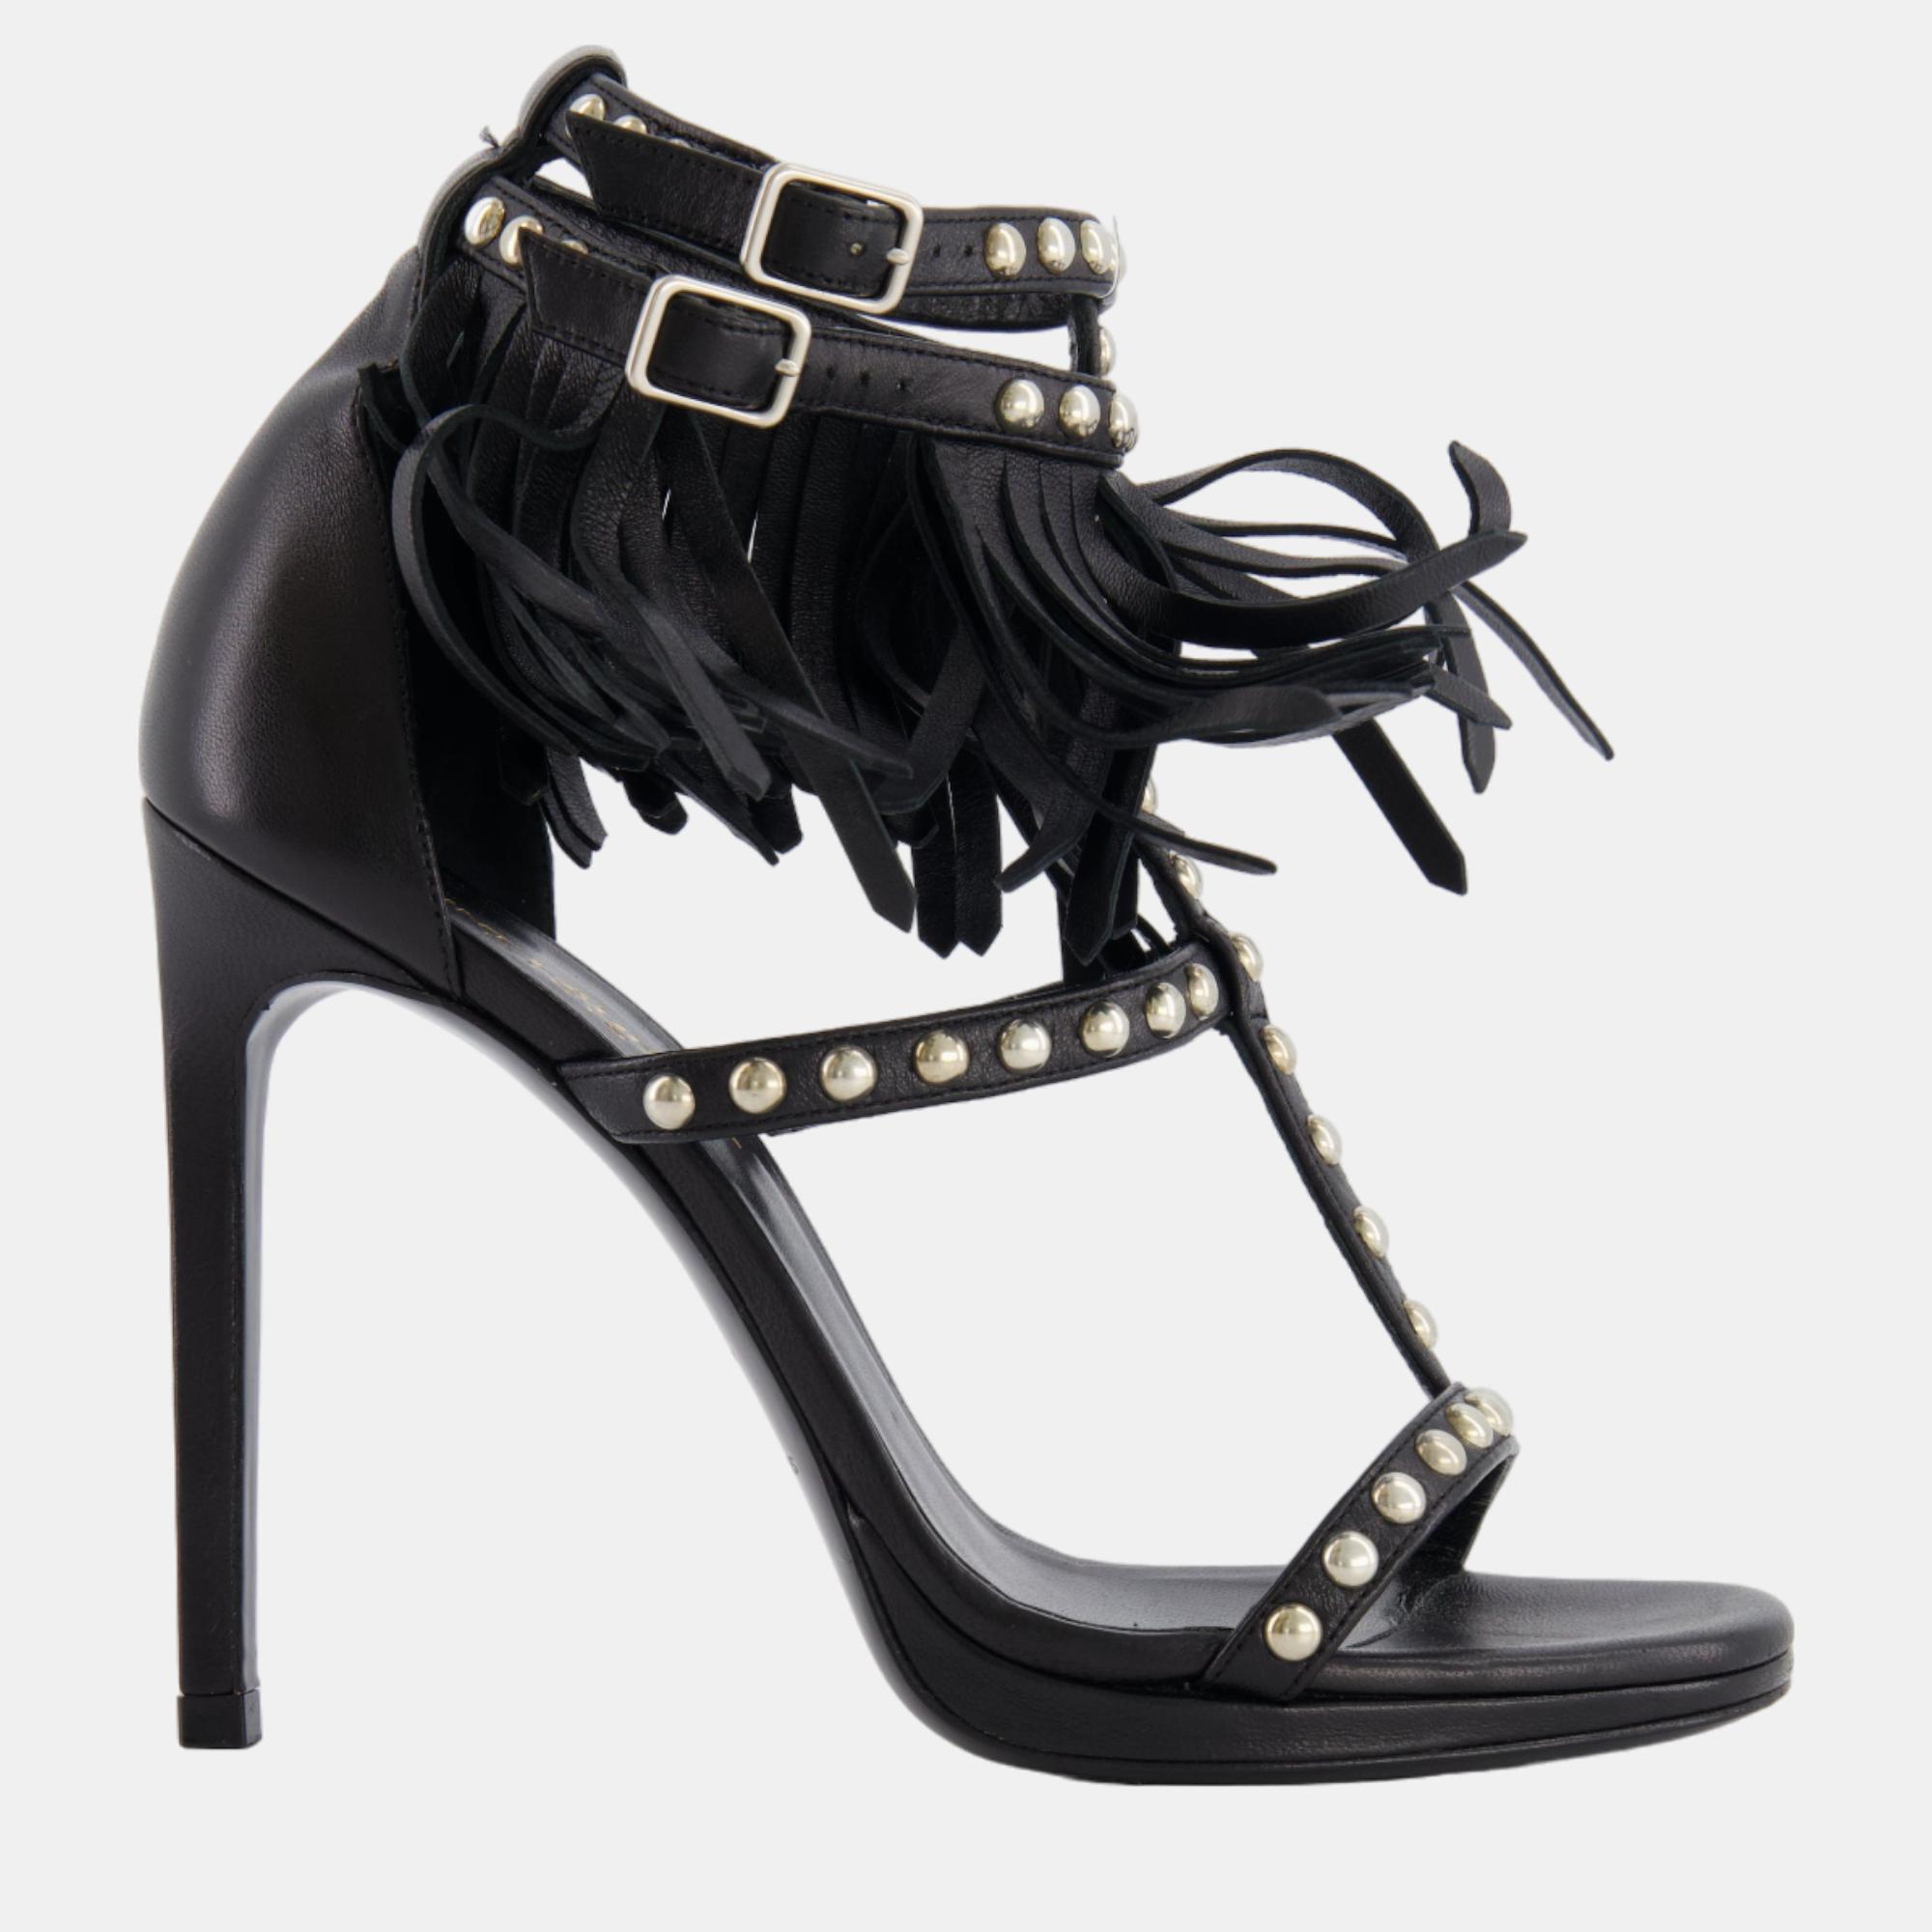 Saint laurent paris saint laurent black leather studded sandal heel with tassels size eu 36